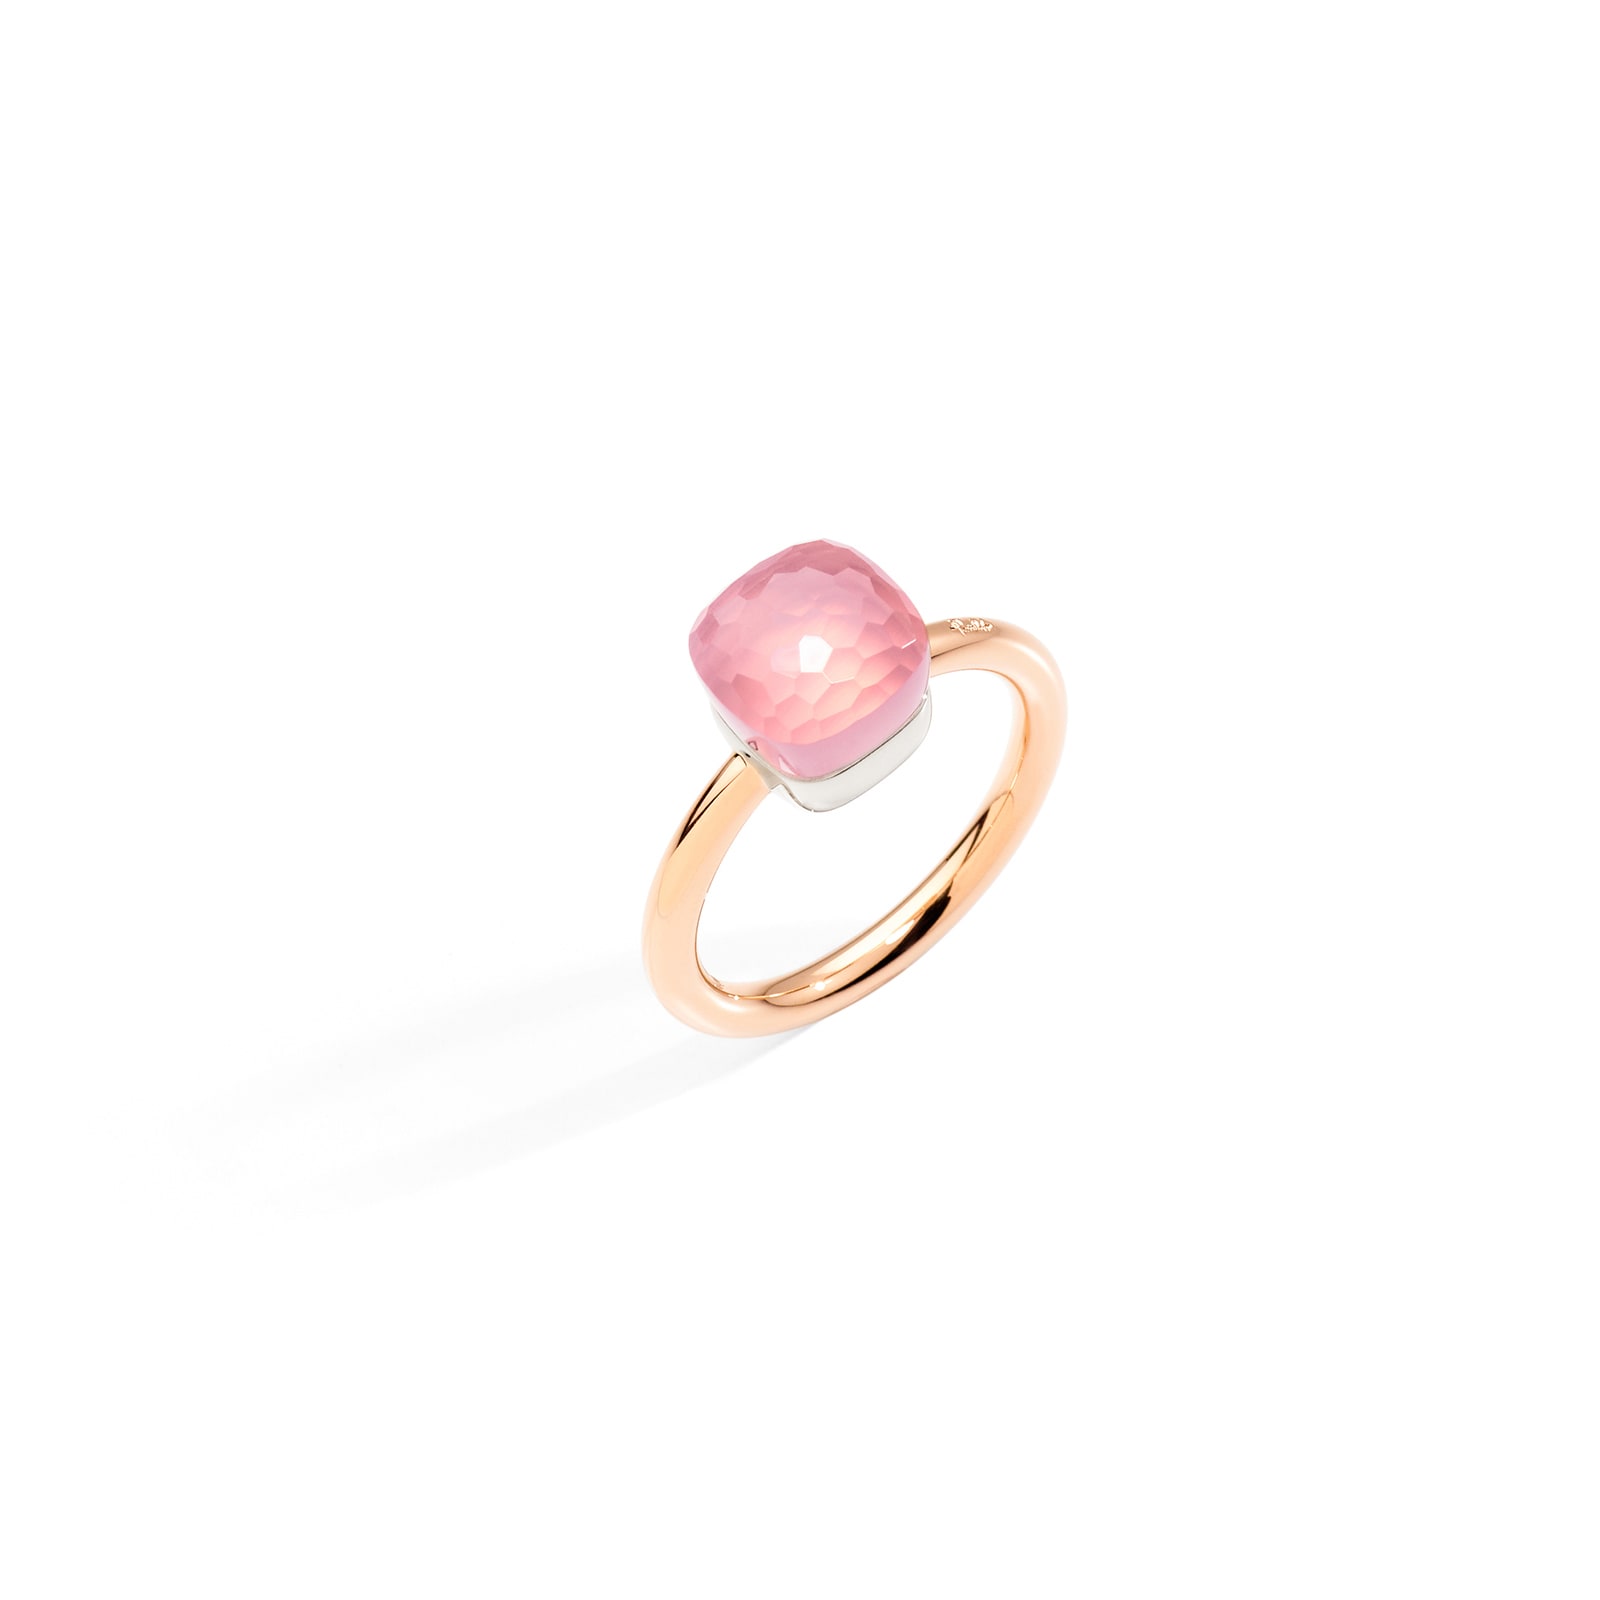 Nudo Petit 18ct Rose & White Gold Rose Quartz Ring - Ring Size O